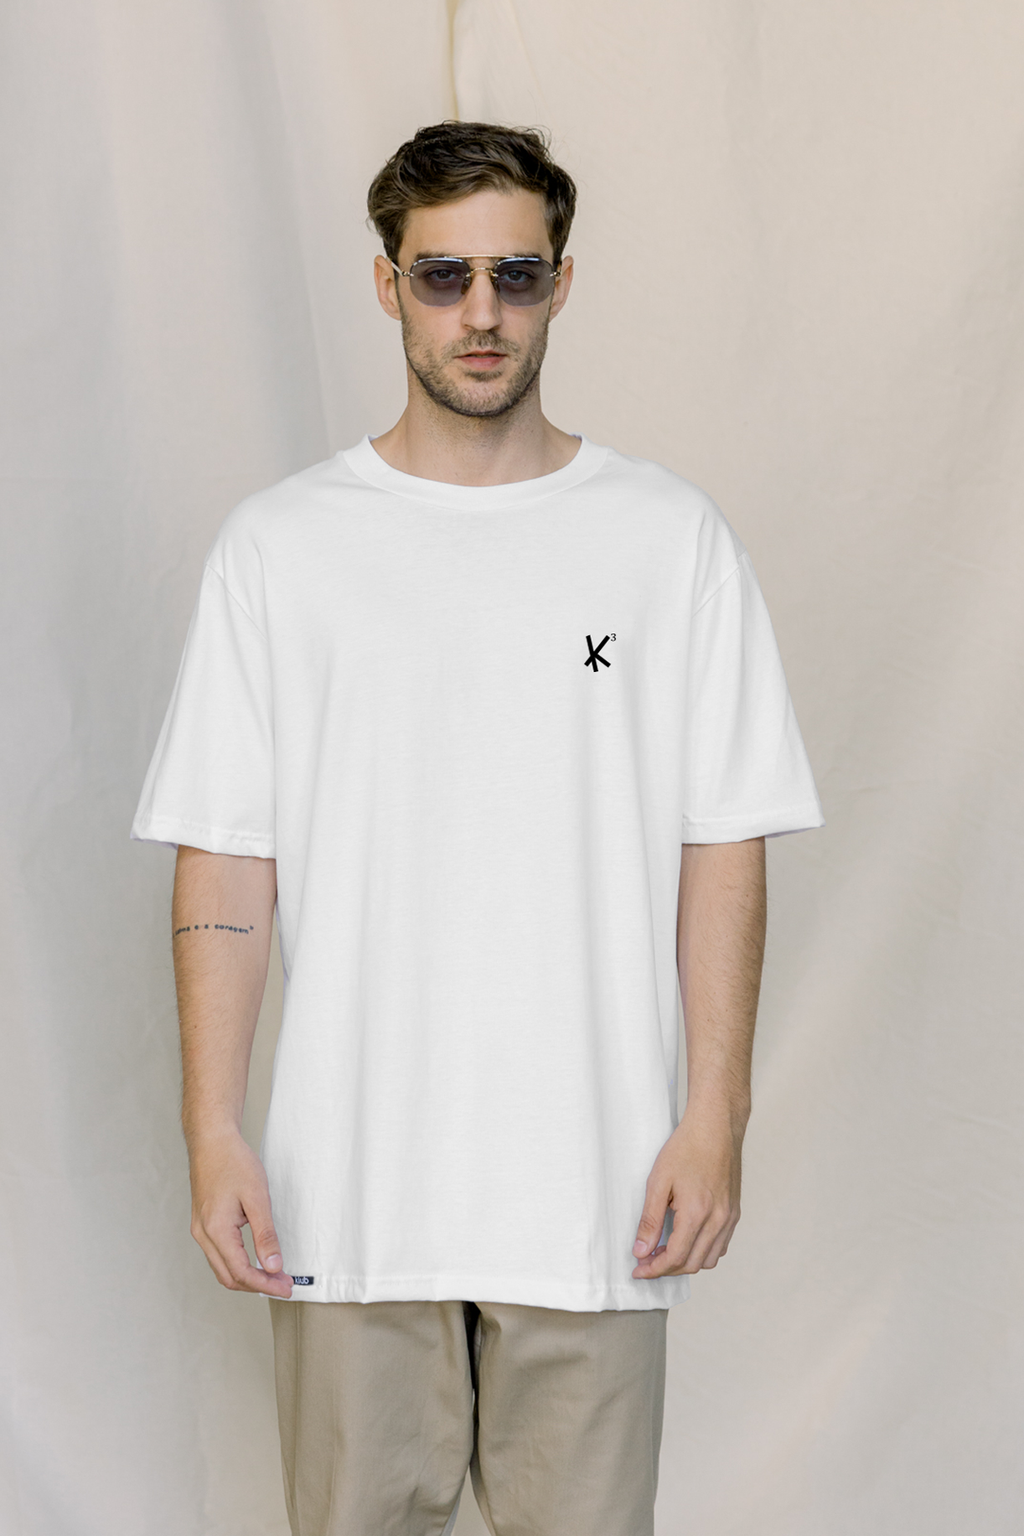 K3 Tshirt White